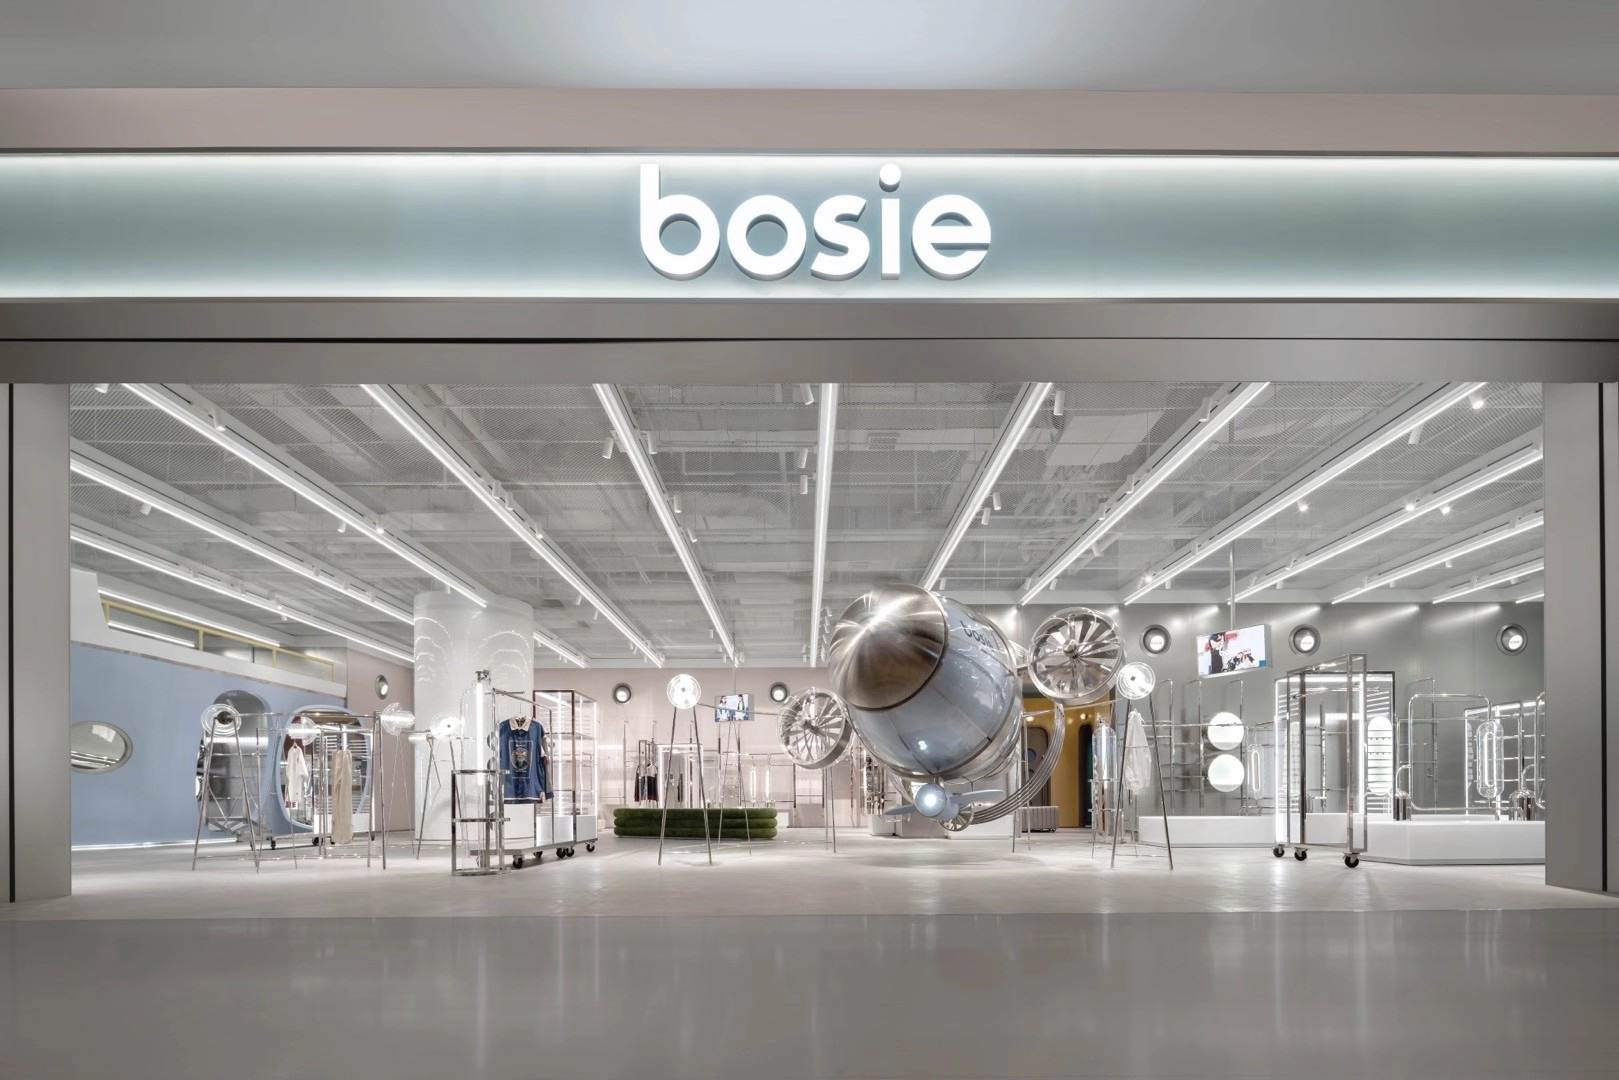 新锐服饰品牌bosie完成2亿元融资 计划开设2000㎡“超级门店”